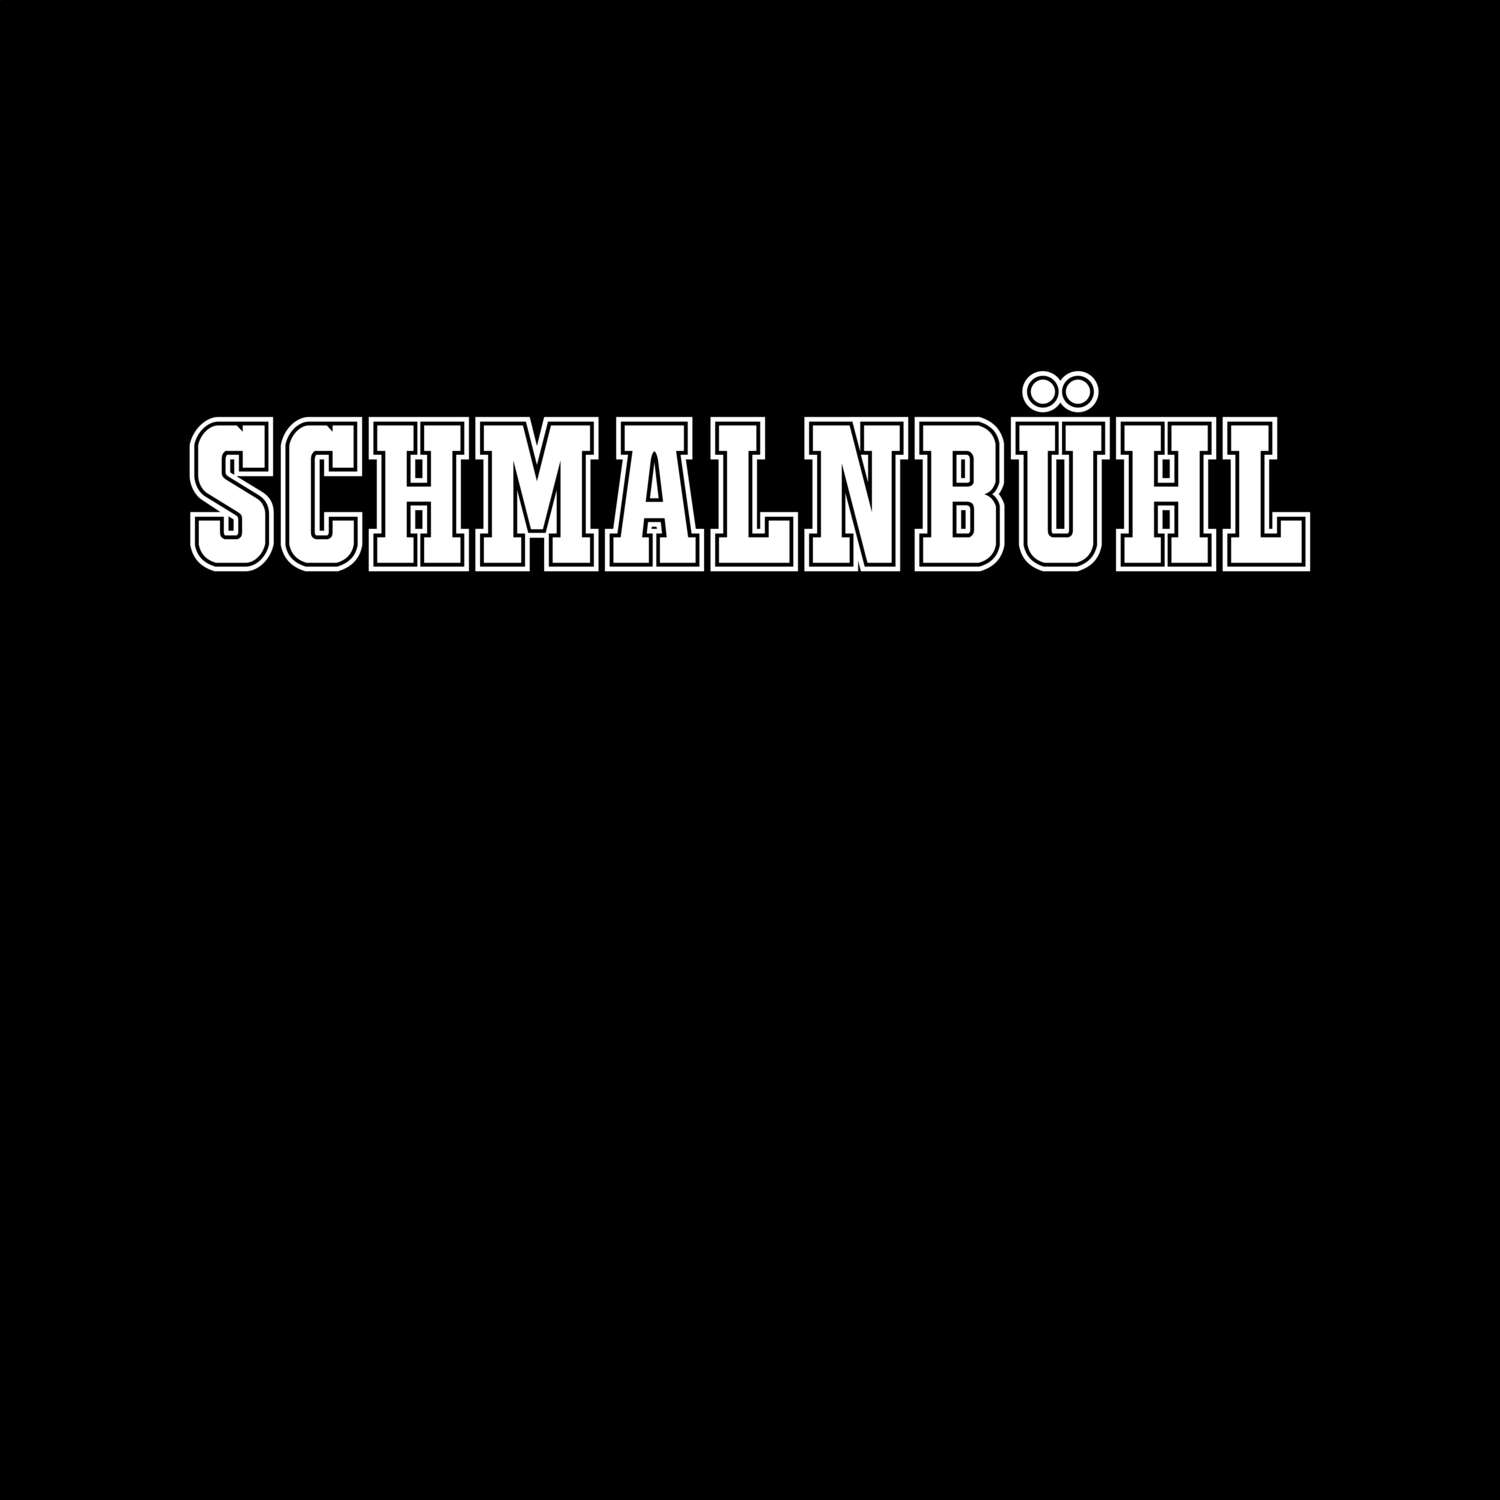 Schmalnbühl T-Shirt »Classic«